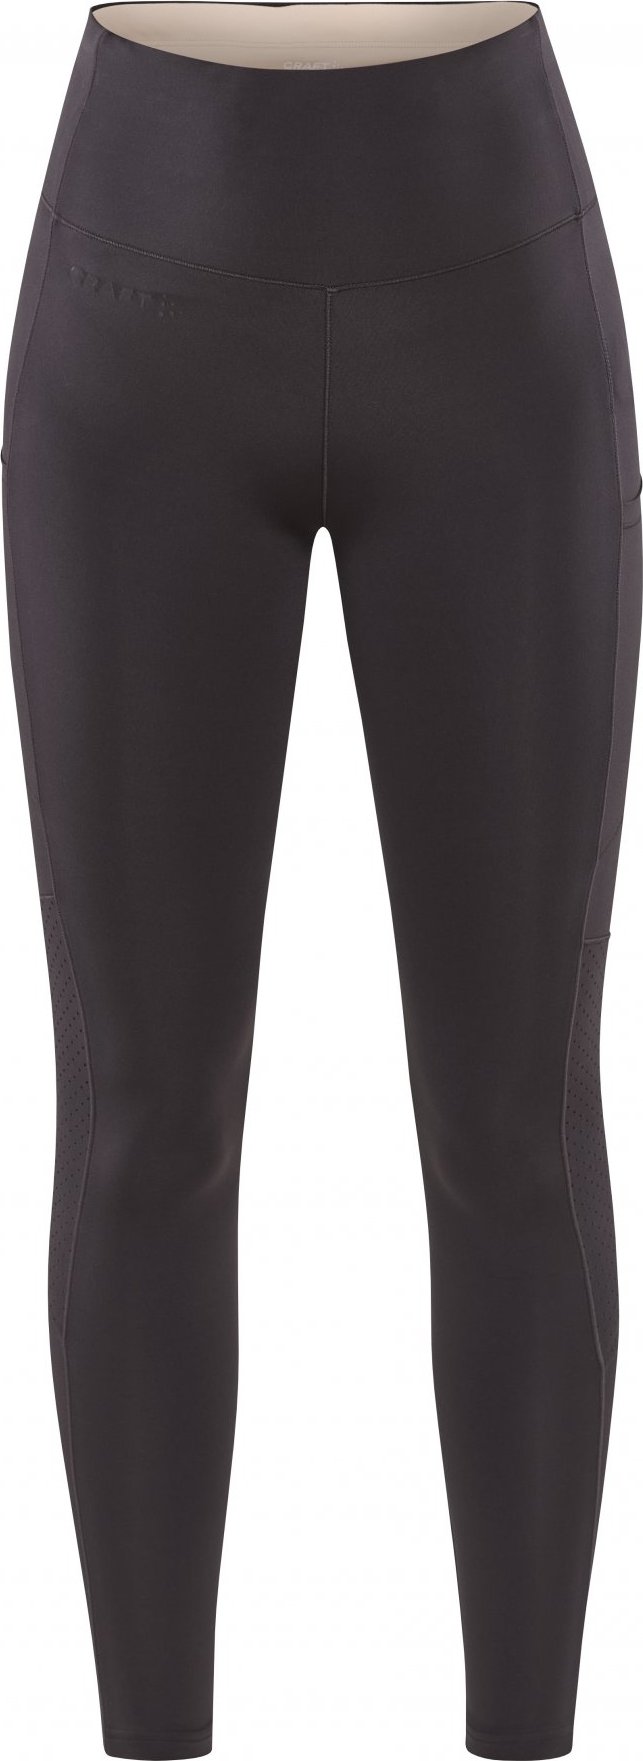 Dámské elastické kalhoty CRAFT Adv Essence 2 šedé Velikost: L